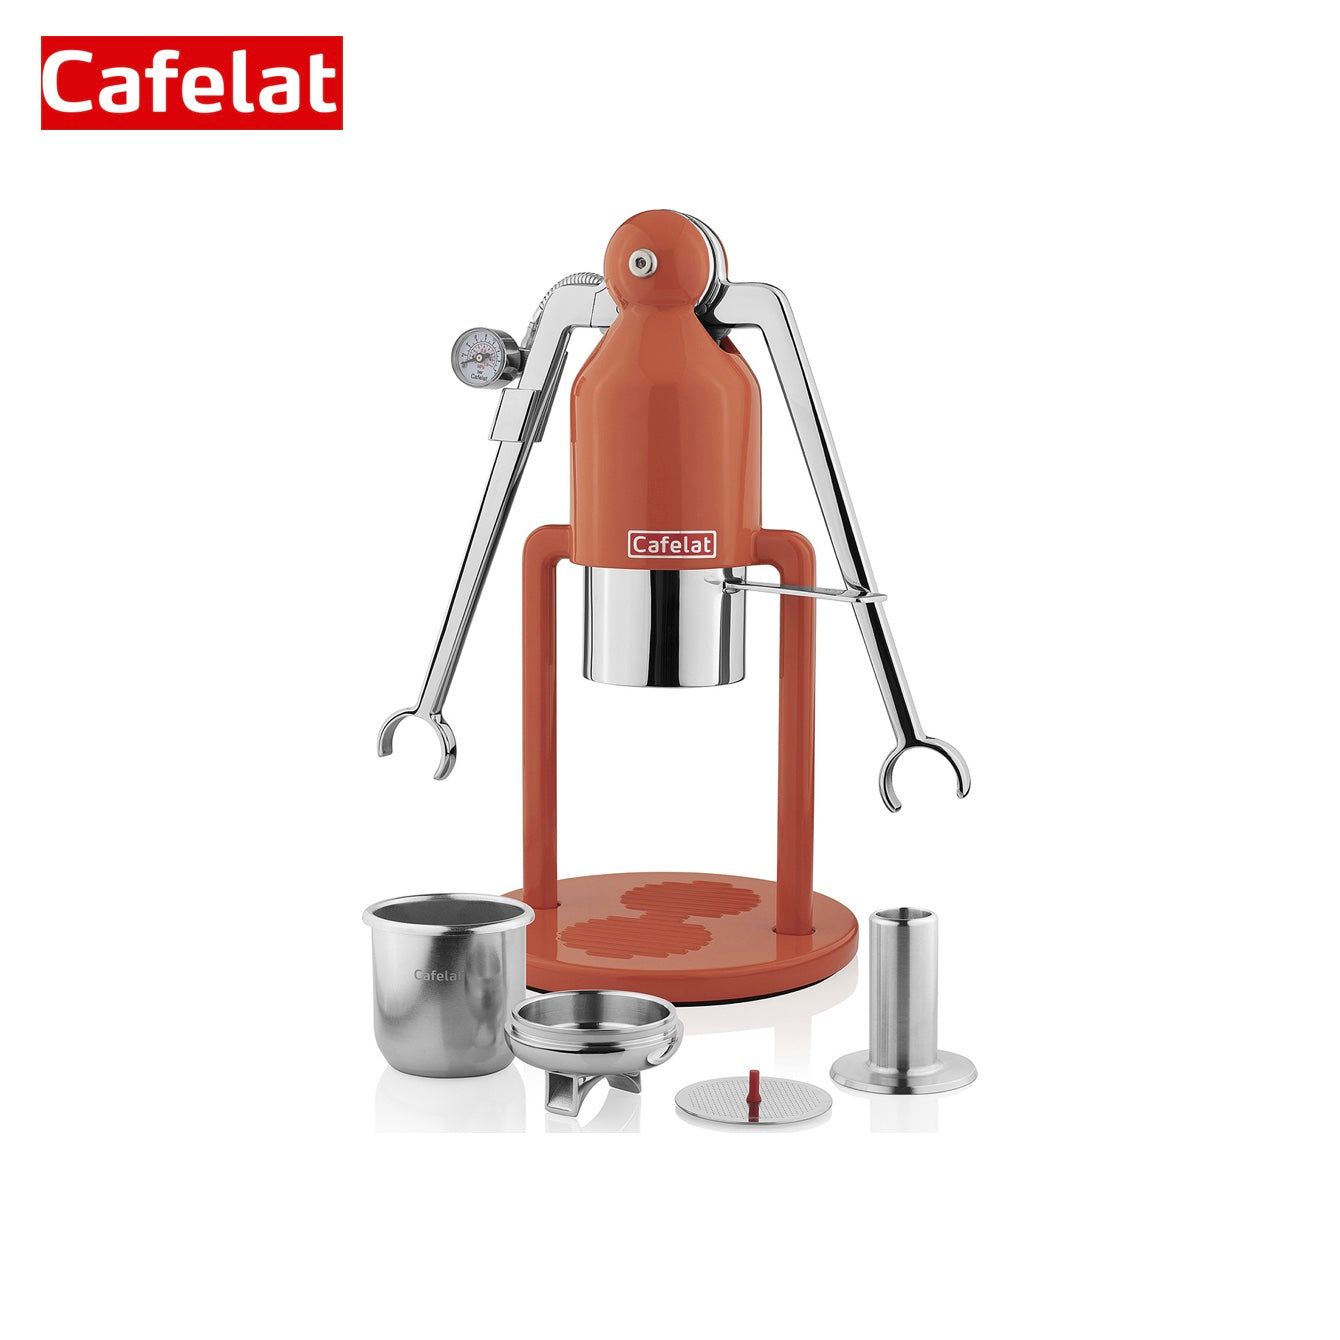 Cafelat Robot Manual Lever Espresso Machine - Orange